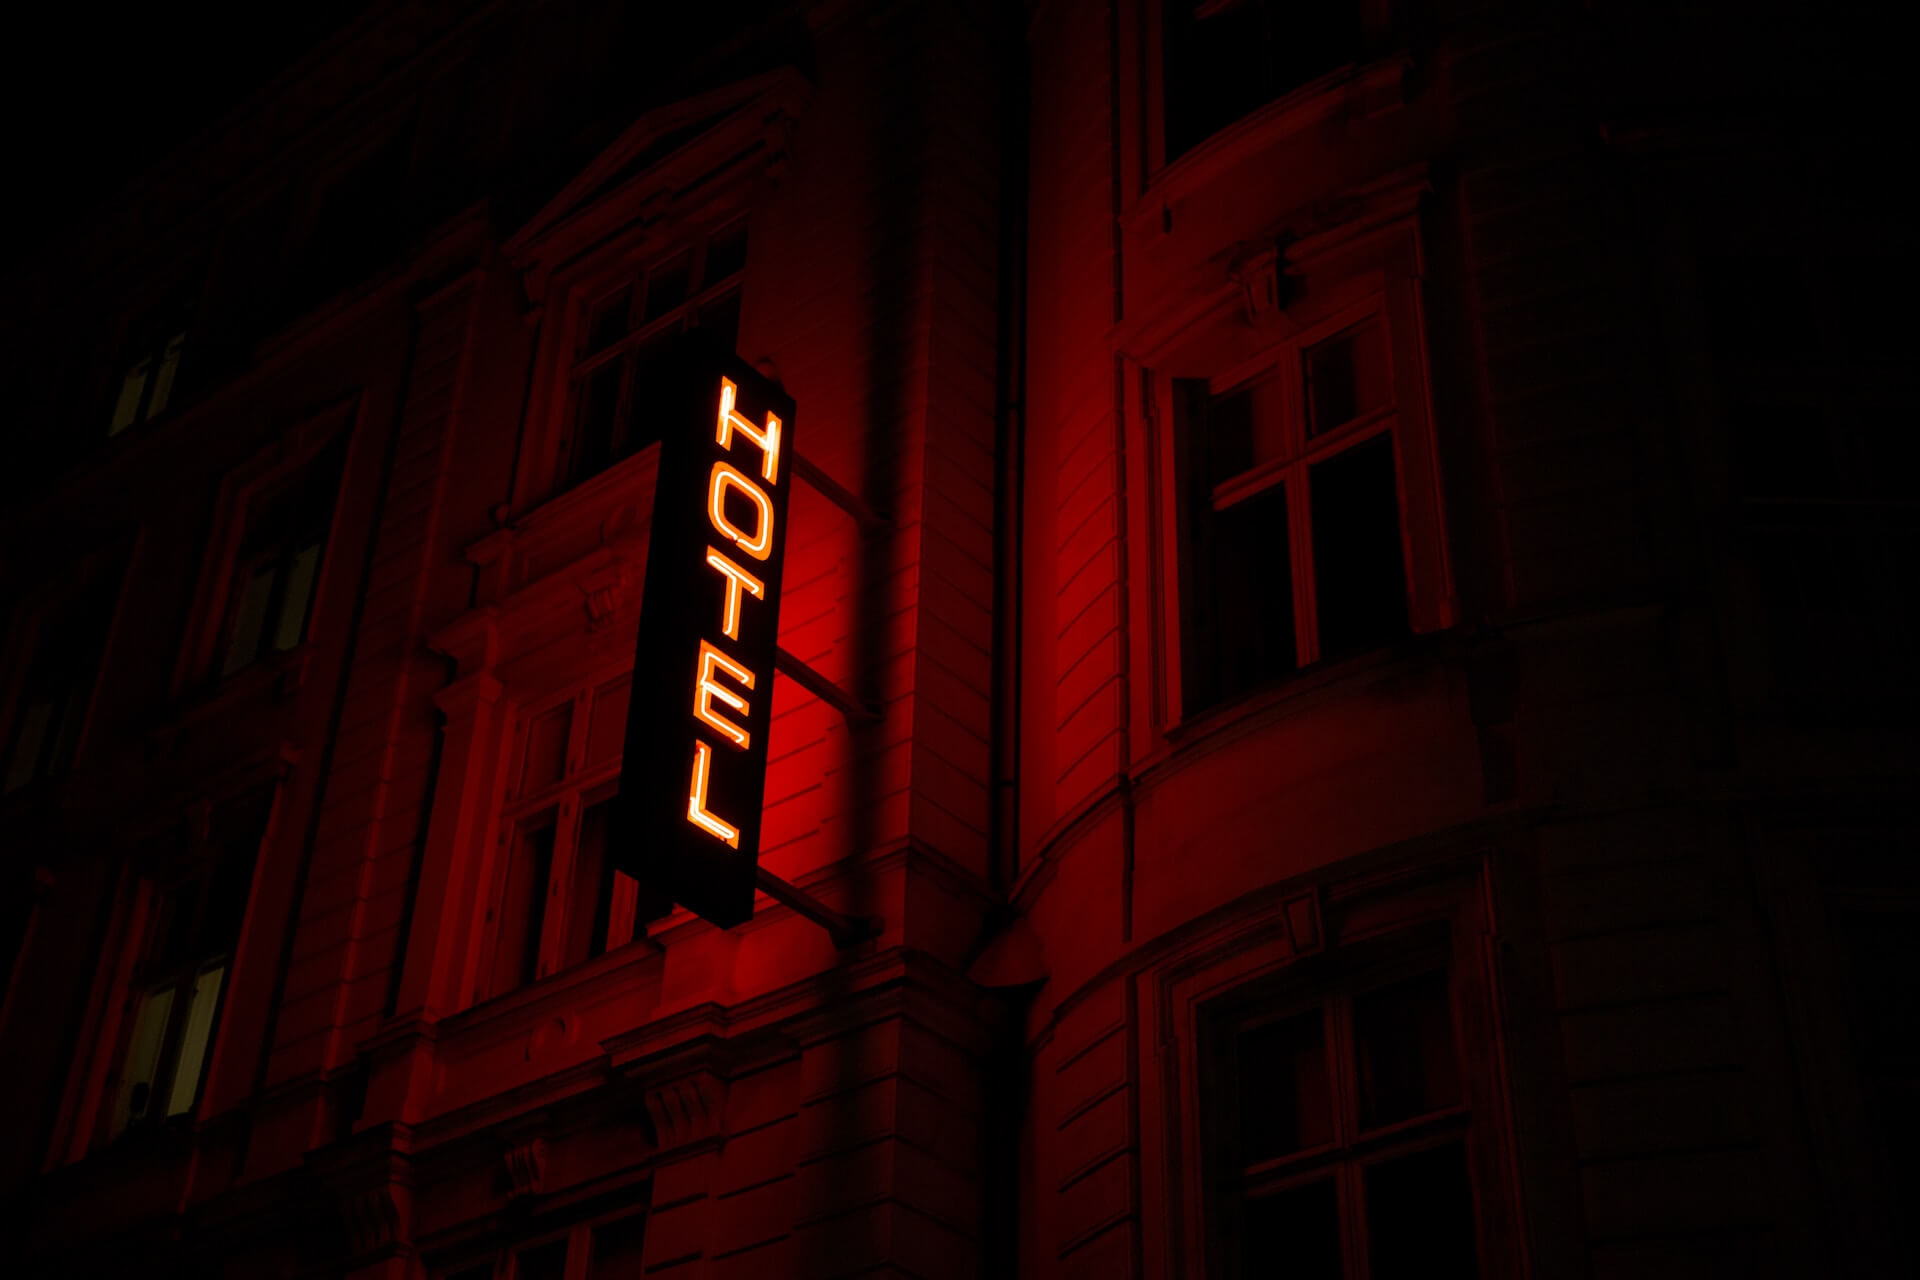 Red neon "hotel" sign in Copenhagen